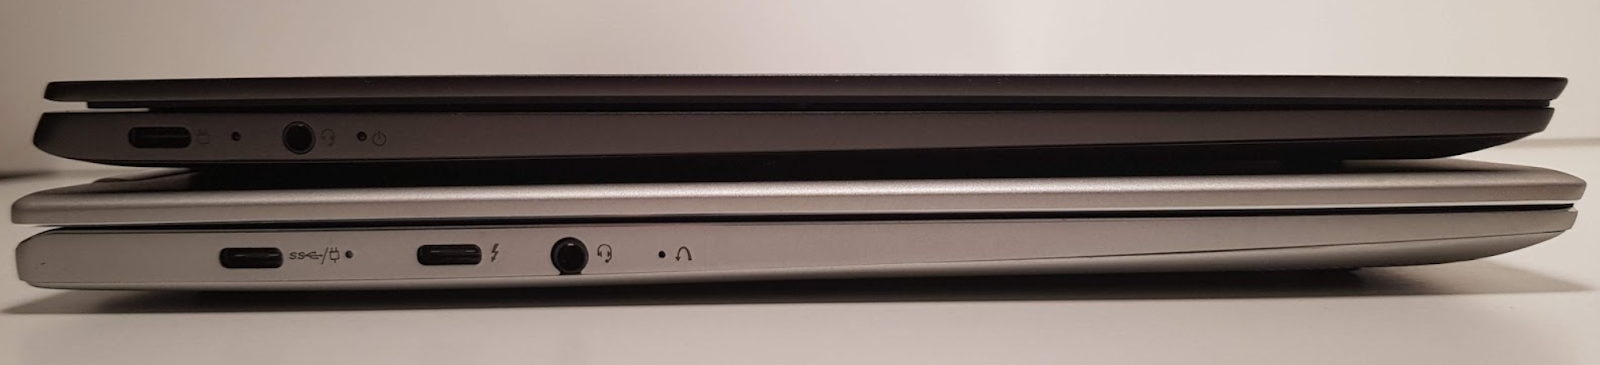 Обзор ноутбука Lenovo S730-13 (2018): мощное железо в стильном алюминиевом корпусе - 2